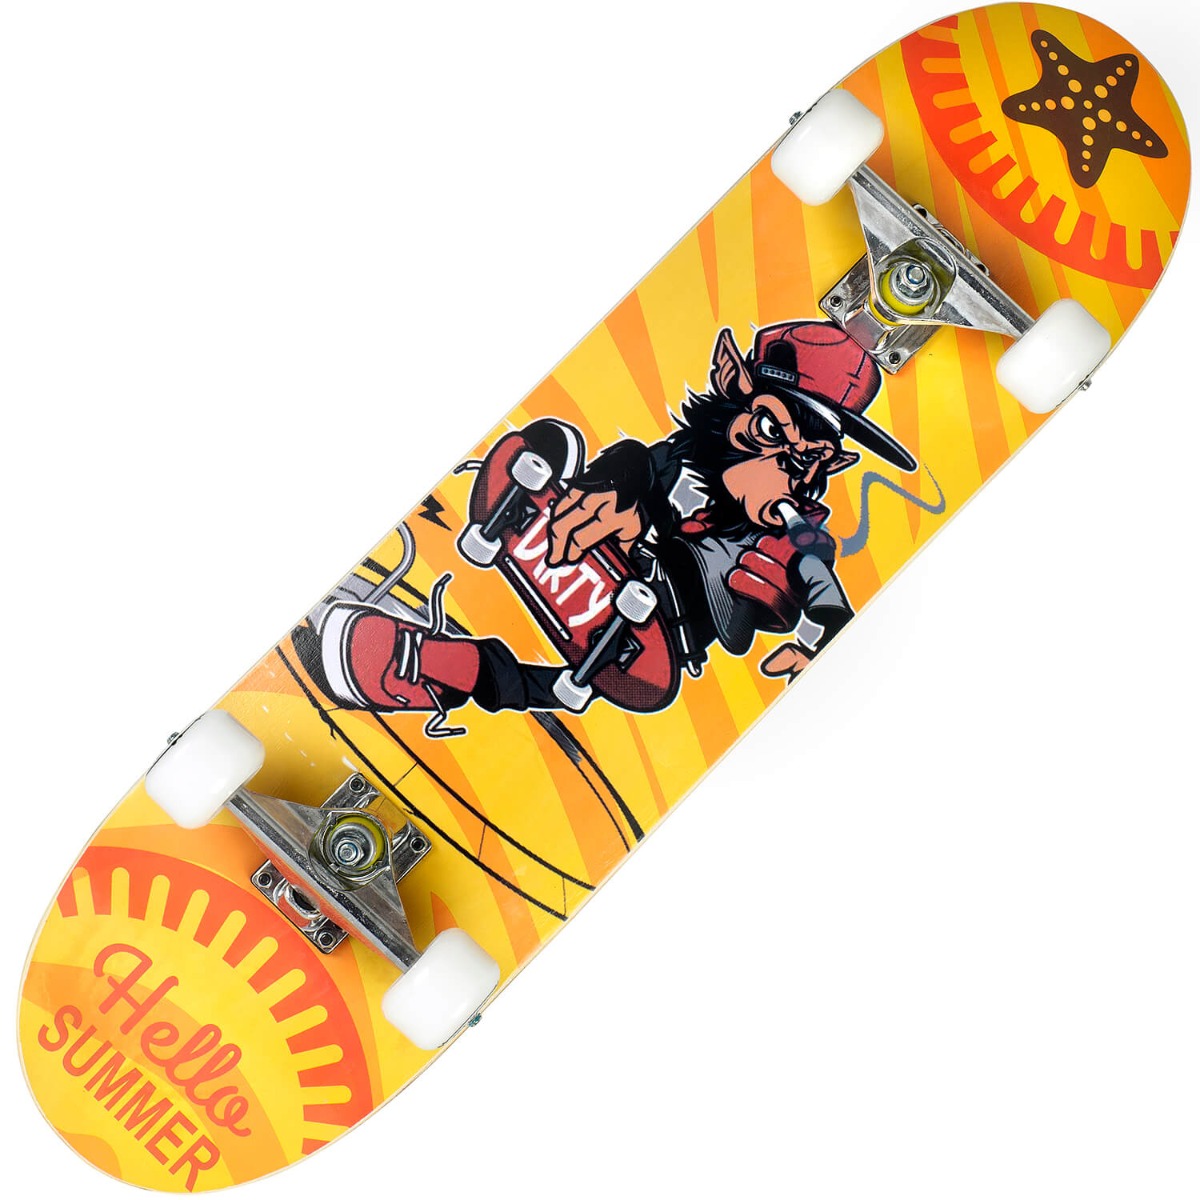 Skateboard Action One, ABEC-7 Aluminiu, 79 x 20 cm, Multicolor Monkey ABEC-7